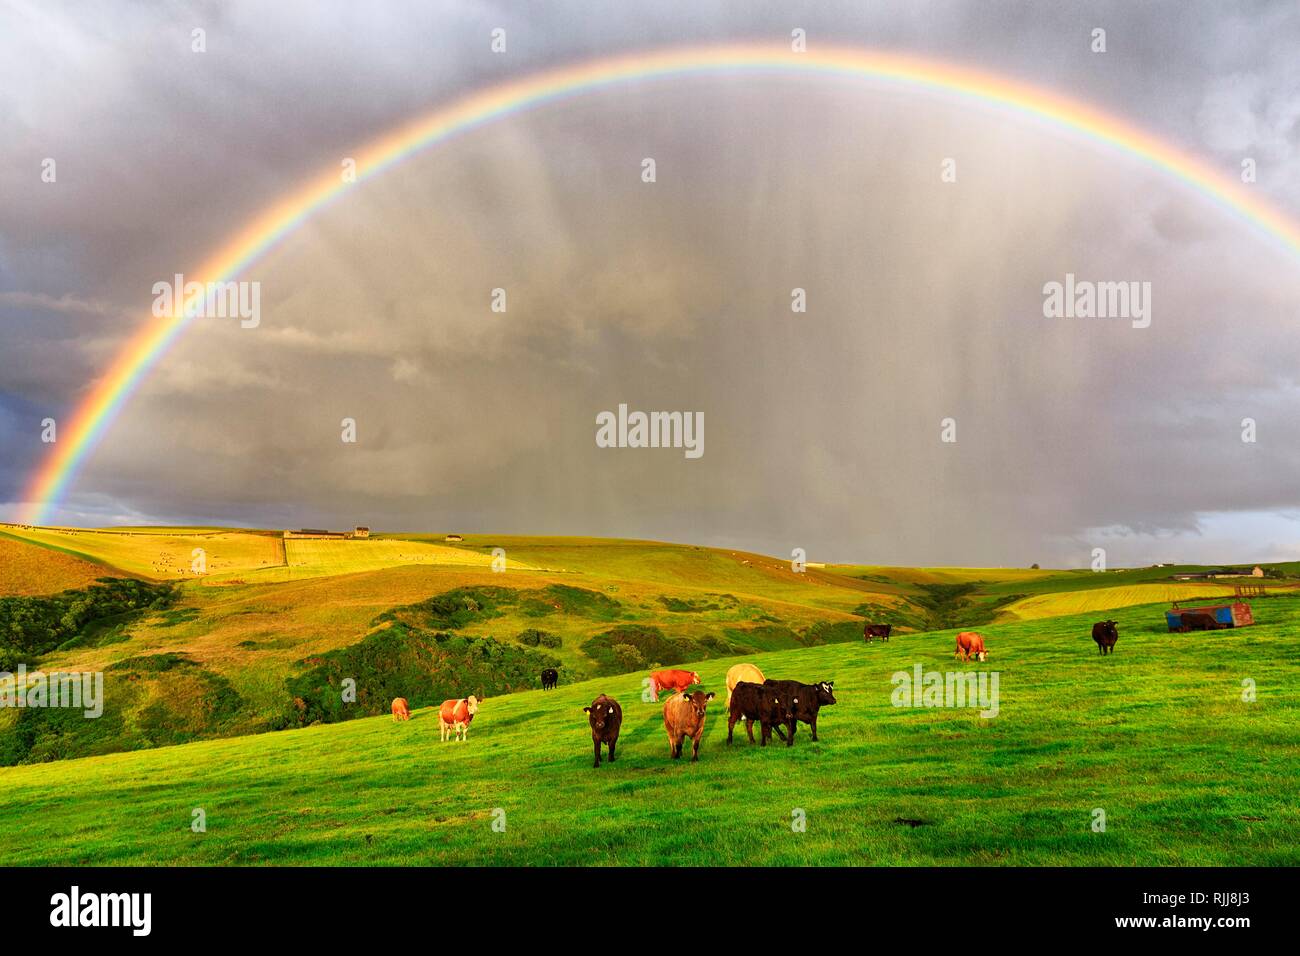 Angus le pâturage du bétail sur les pâturages en paysage agricole avec rainbow, Pennan, Aberdeenshire, Ecosse, Grande-Bretagne Banque D'Images